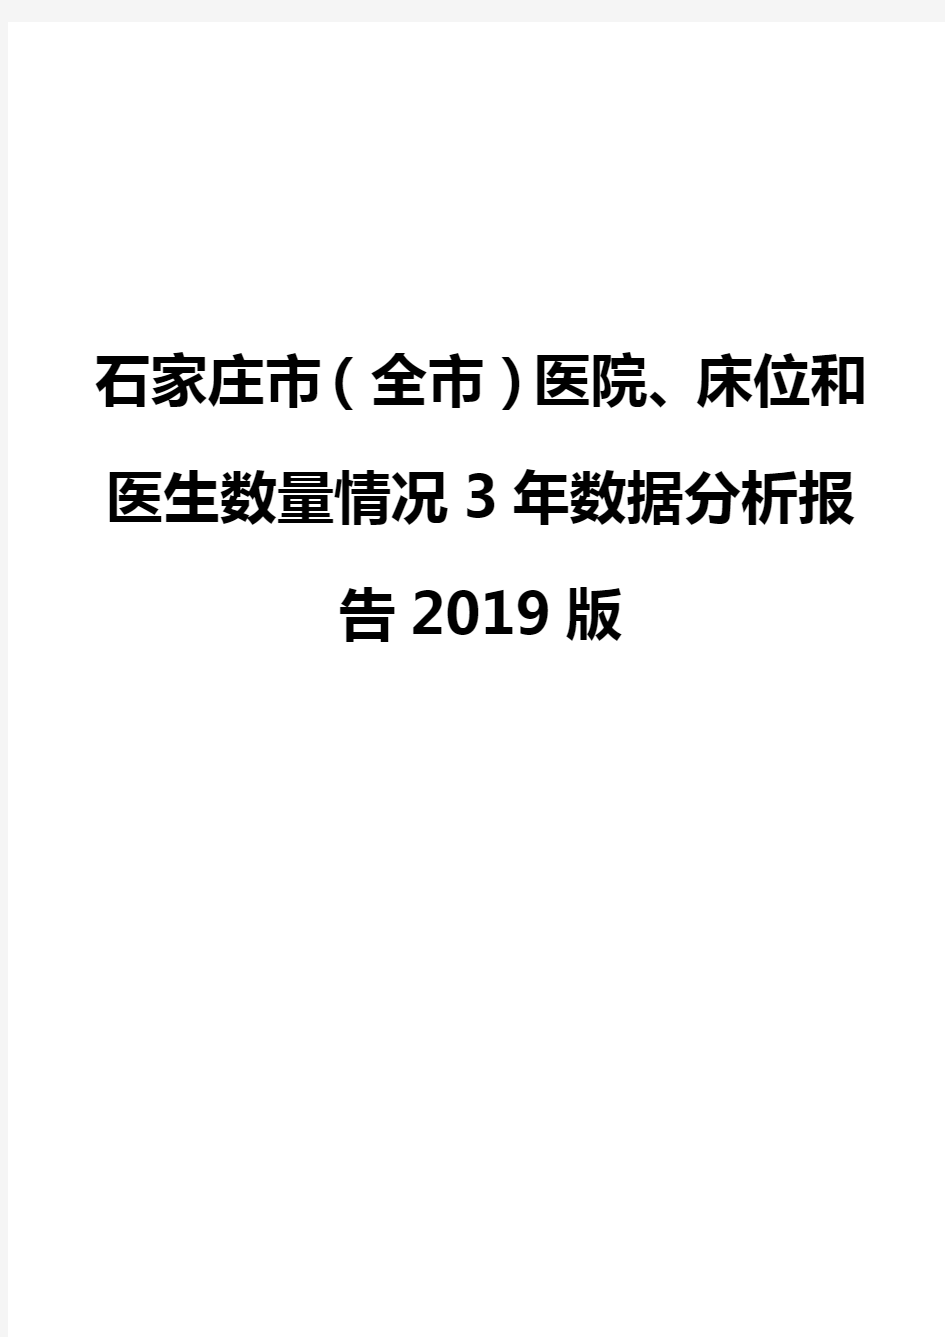 石家庄市(全市)医院、床位和医生数量情况3年数据分析报告2019版